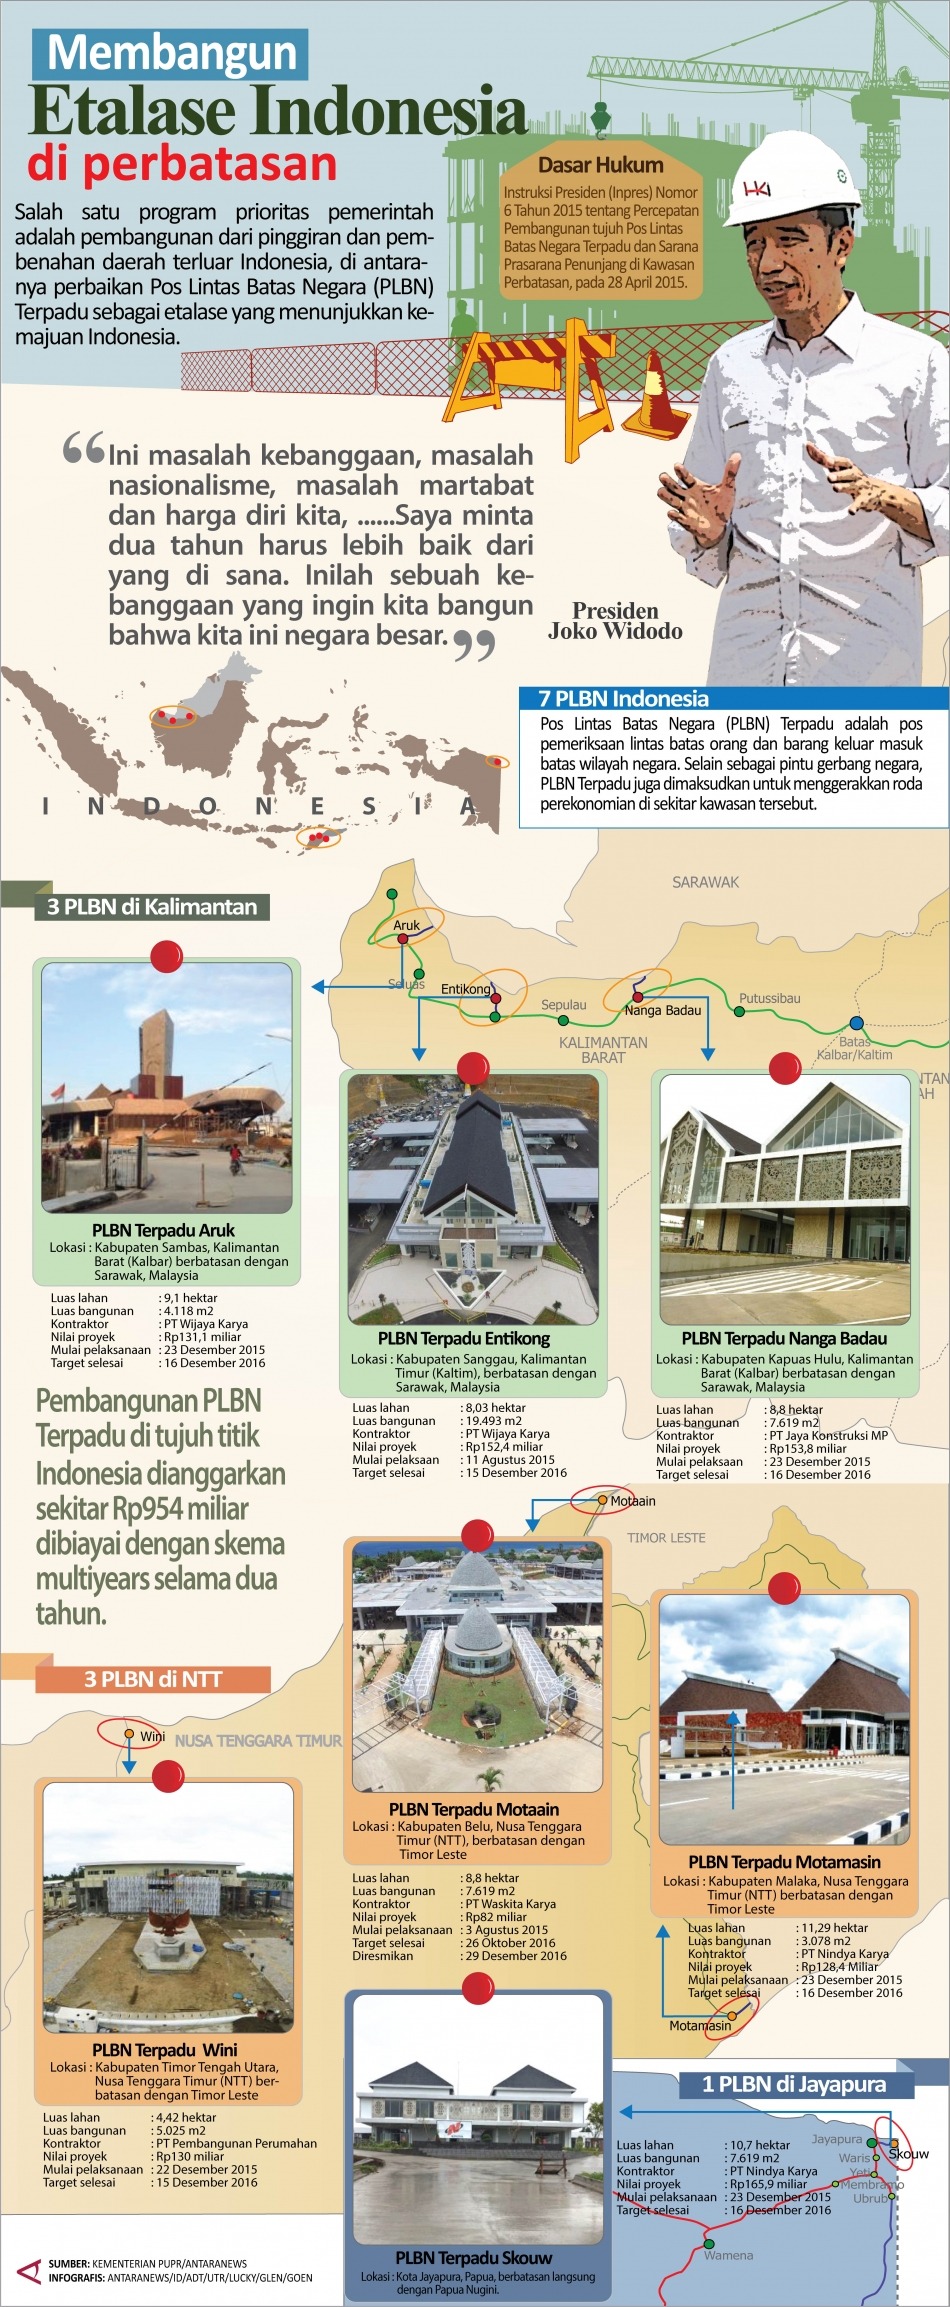  Membangun Etalase Indonesia di Perbatasan